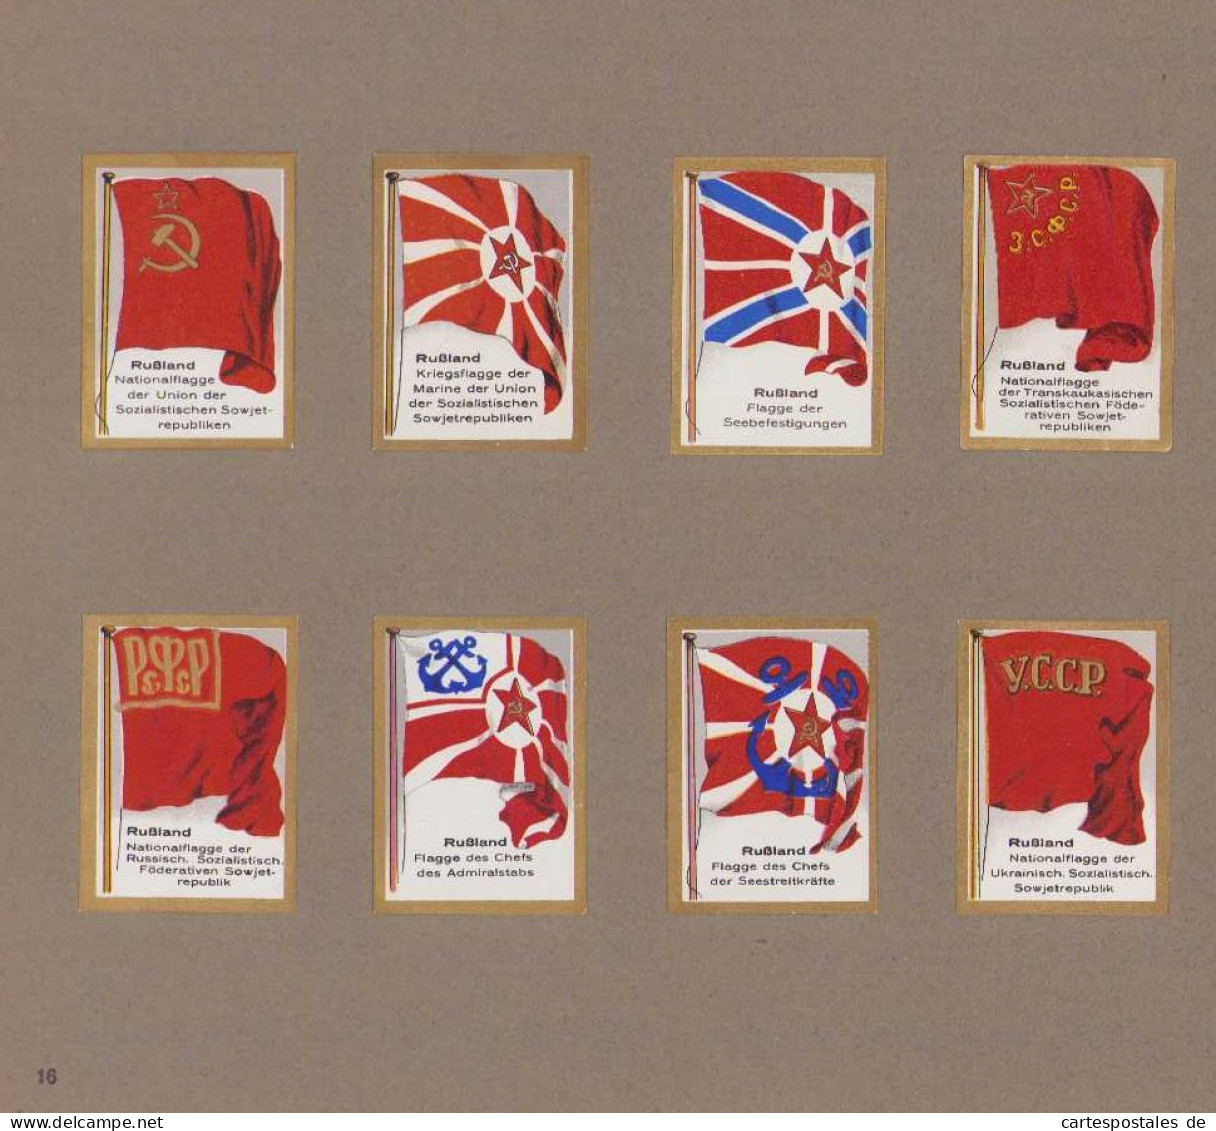 Sammelalbum 200 Bilder, Flaggen Europas Album 6, Deutsches Reich, Grossbritannien, Russland, Jugoslawien, Tschechoslow  - Albumes & Catálogos